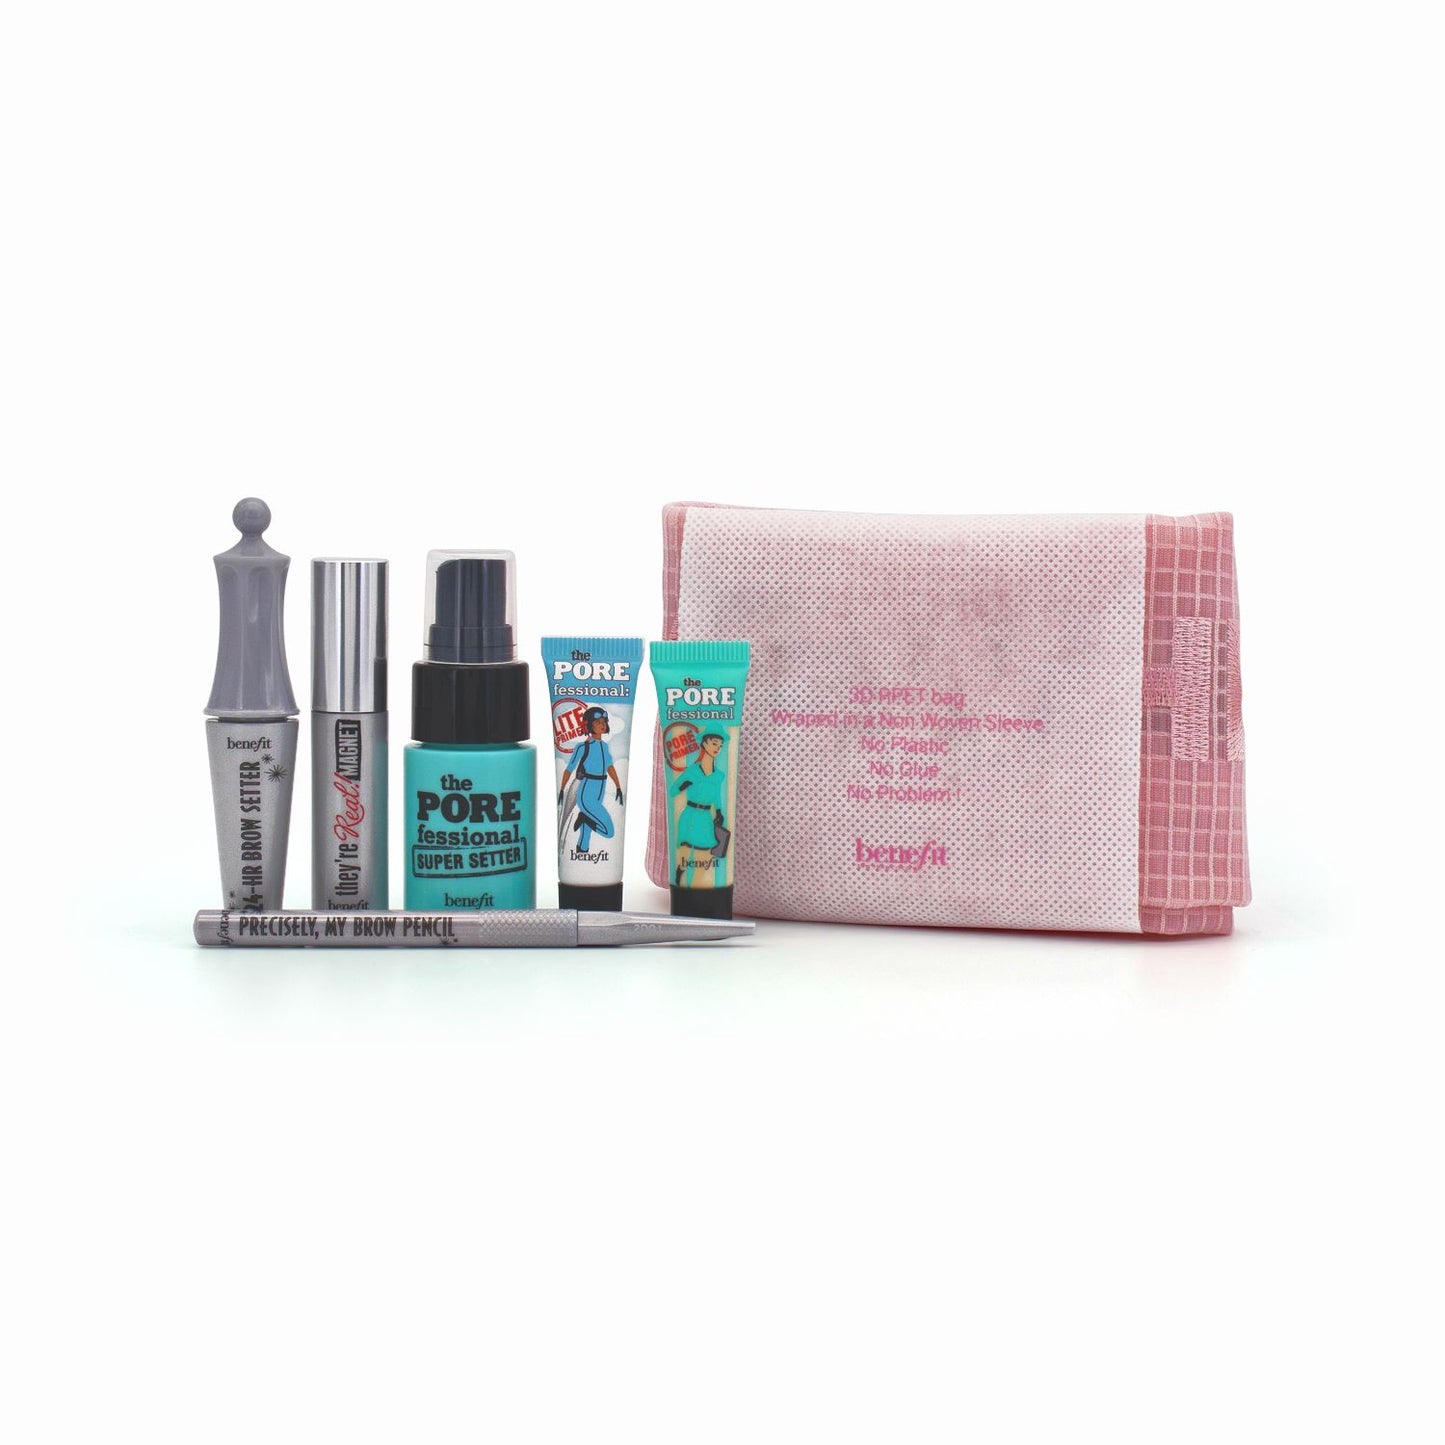 Benefit Makeup Bundle 6 Piece Set With Pink Bag - Missing Box